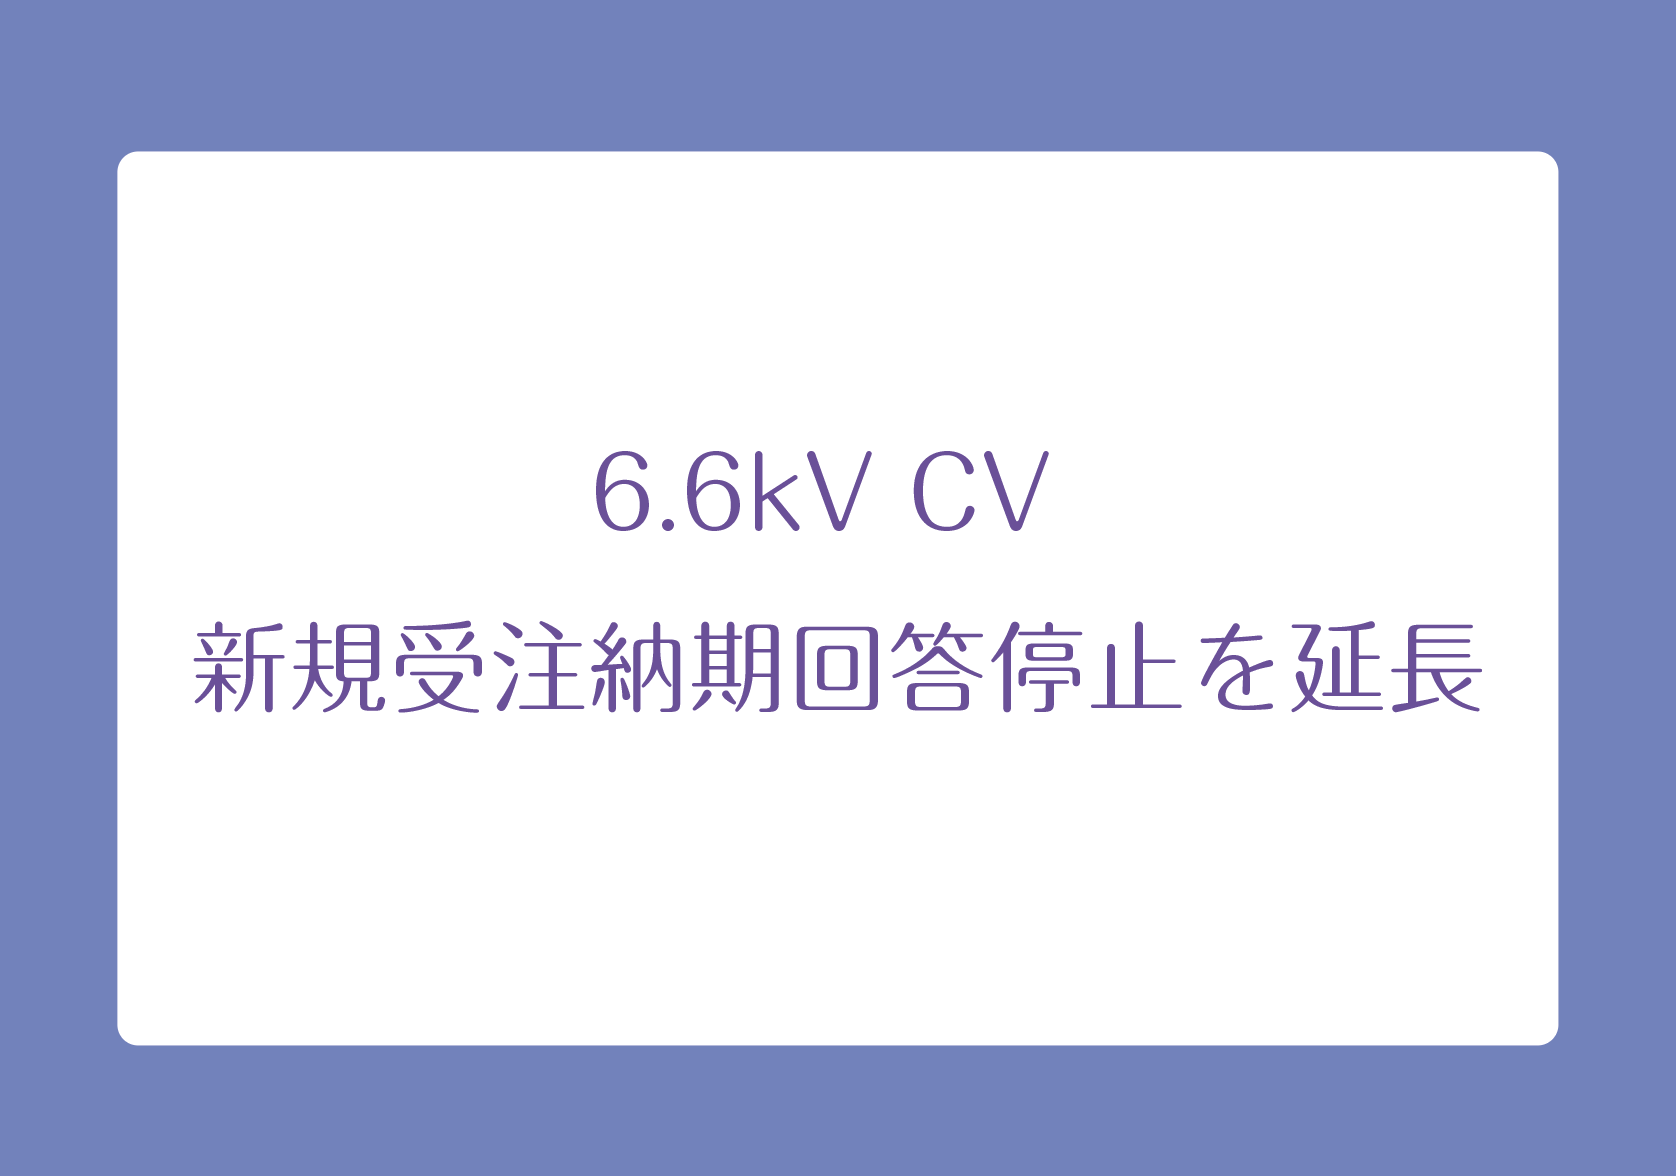 6.6kV CV 新規受注納期回答停止を延長の画像